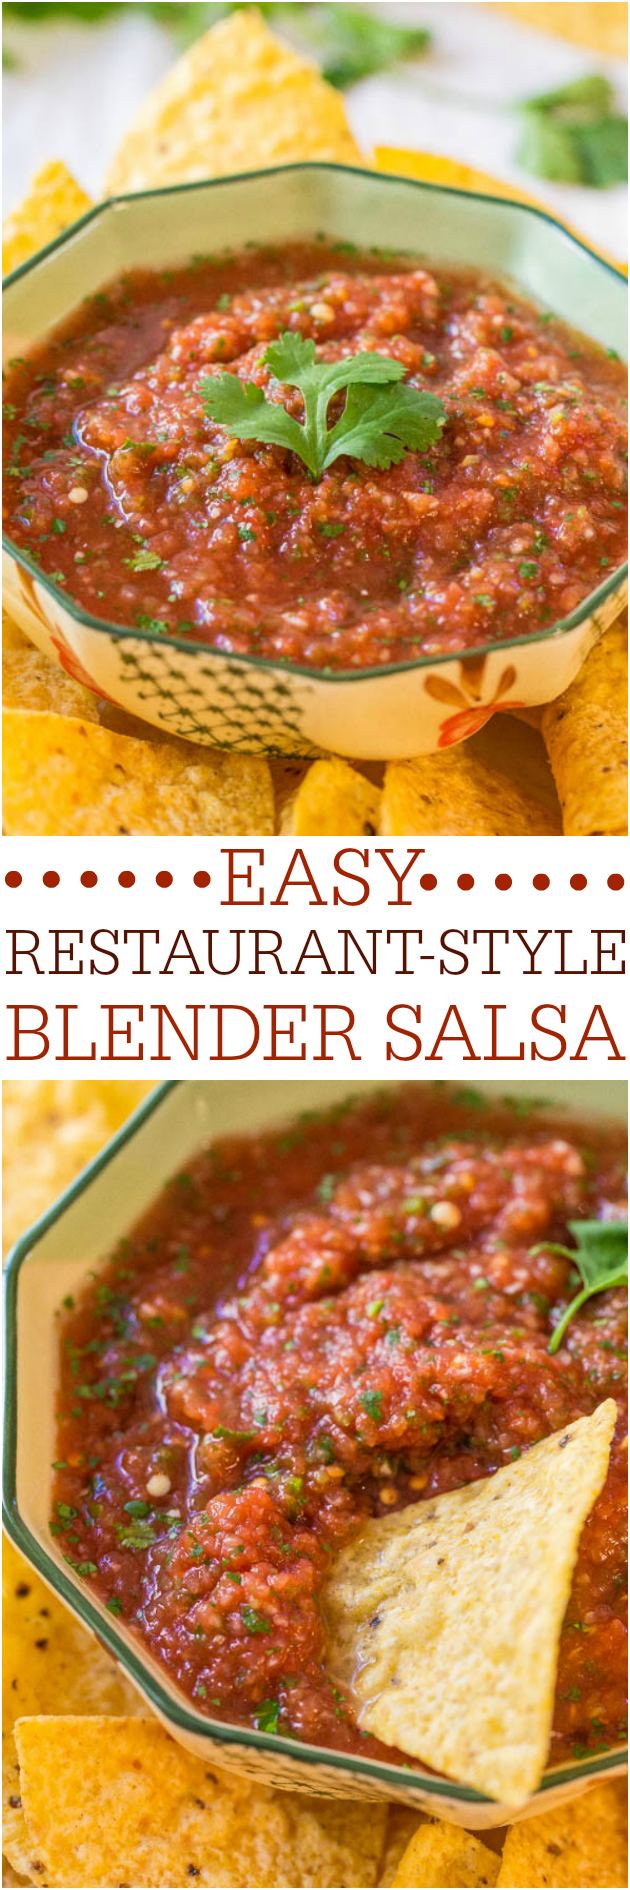 Blender Salsa (Restaurant Style)